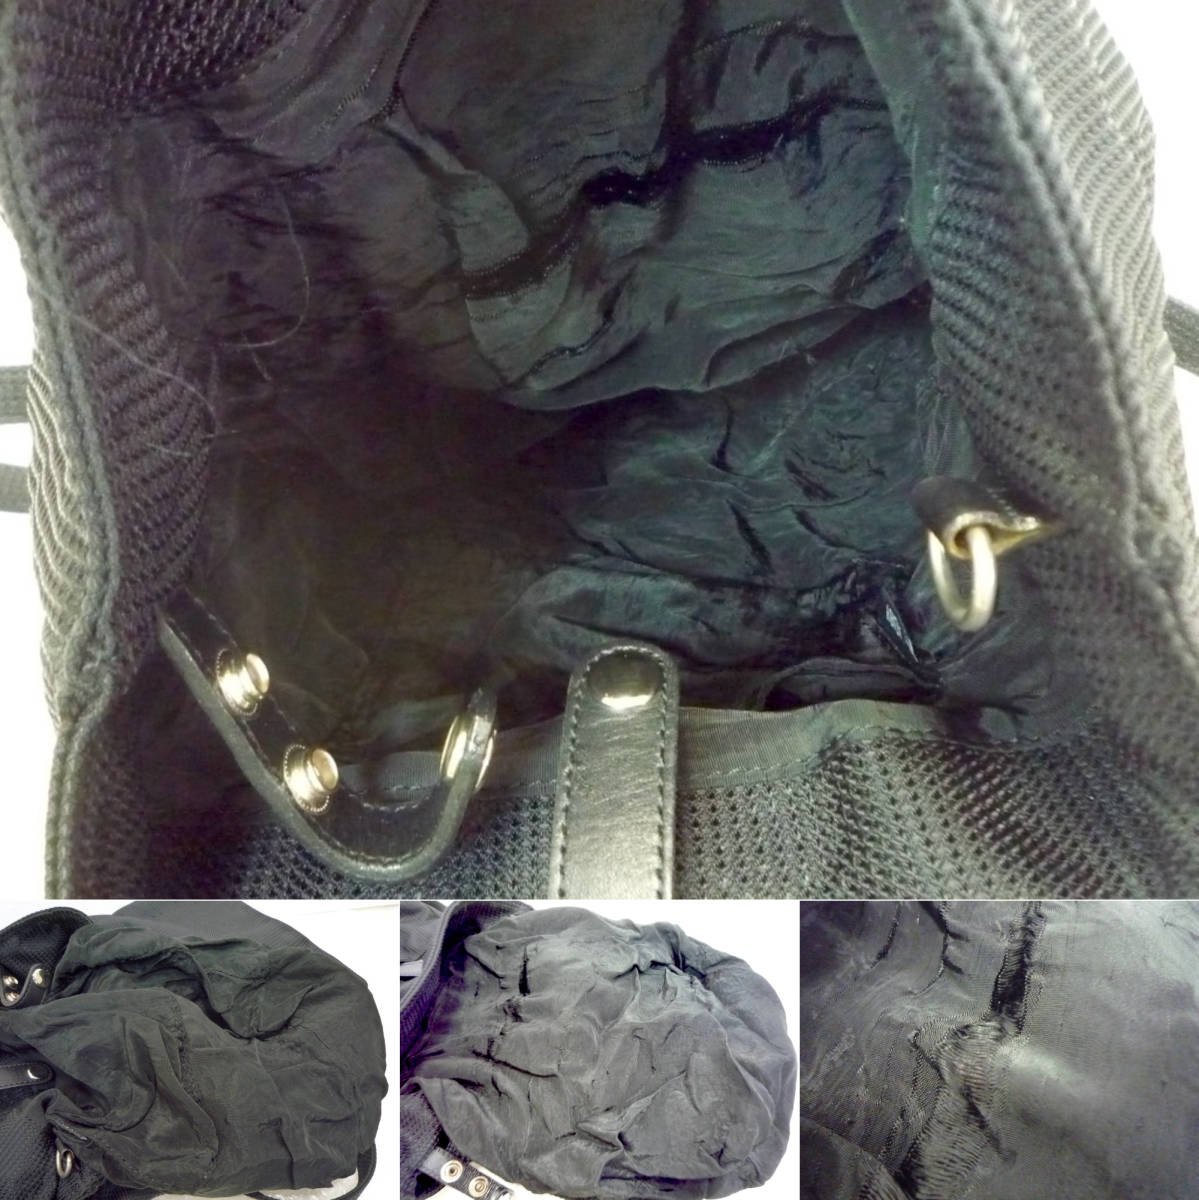 SAZABY Sazaby рюкзак рюкзак сумка модные аксессуары аксессуары черный чёрный простой casual стиль выгодная покупка стоит посмотреть нестандартный OK